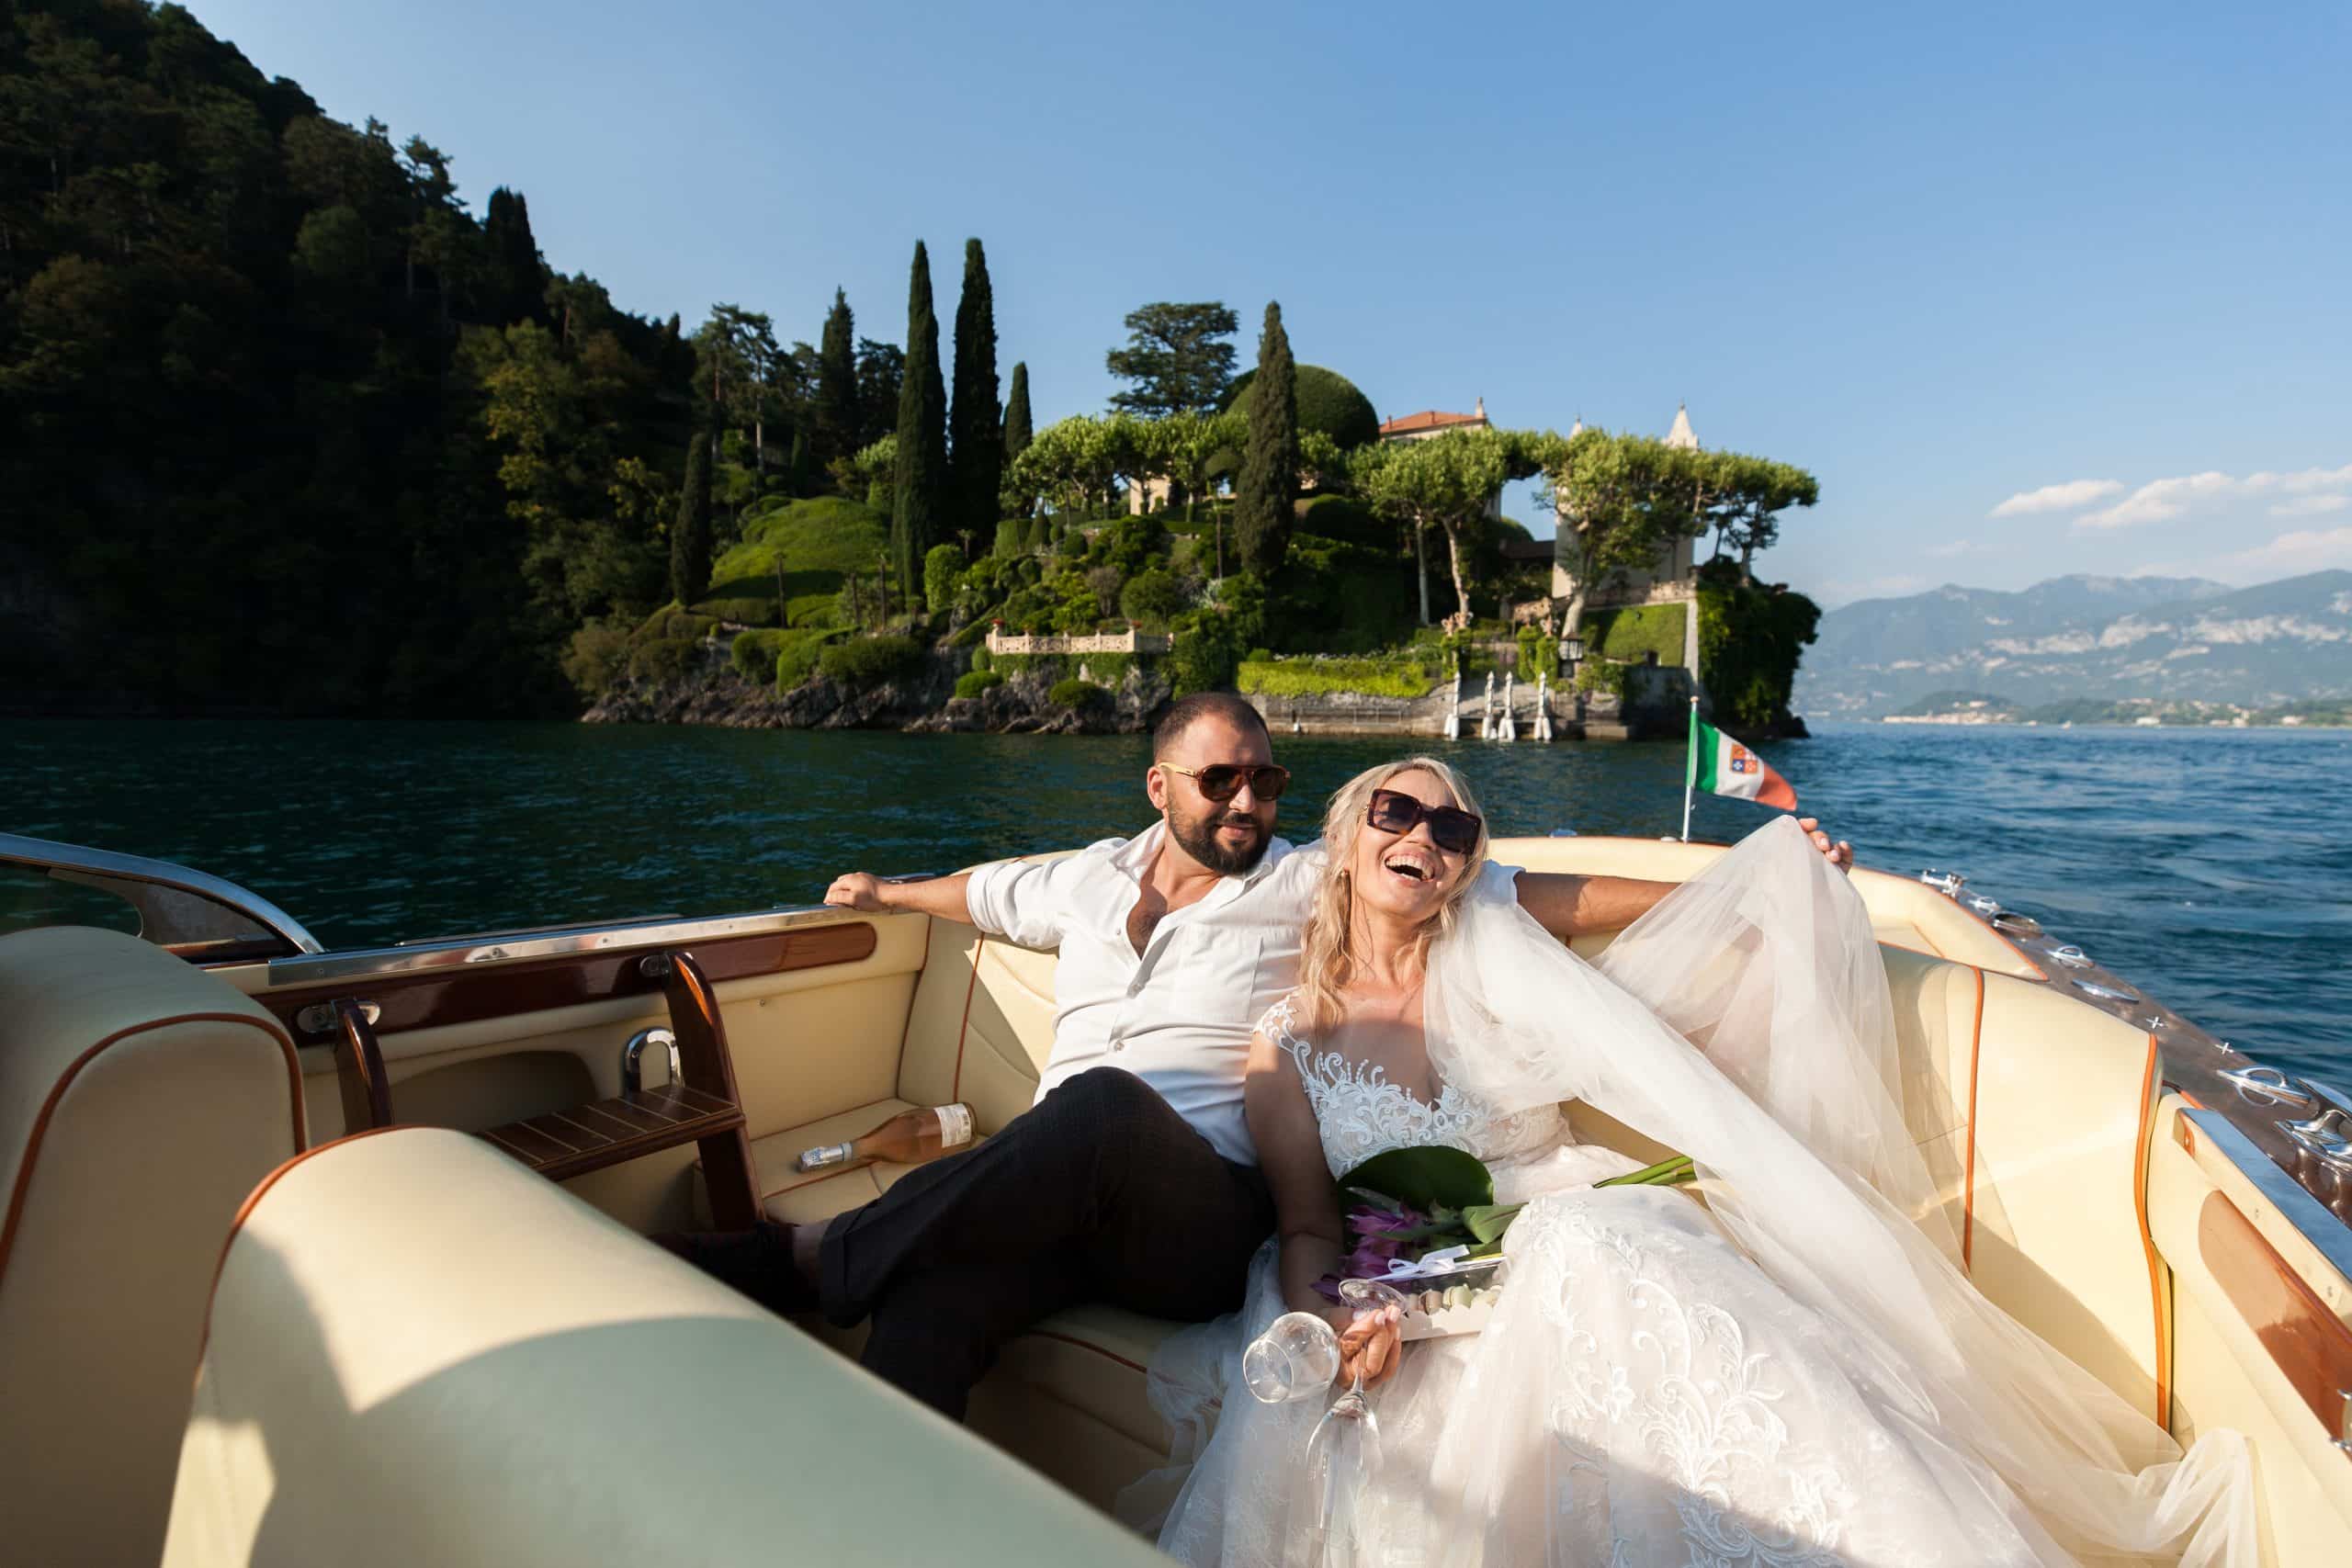 Vilma Wedding & Event Planner _ vestuvių organizatorė koordinatorė planuotoja Italijoje 2023 2024 Vilma Rapšaitė _ Komo _ Toskama _ Umbrija _ Amalfio pakrantė